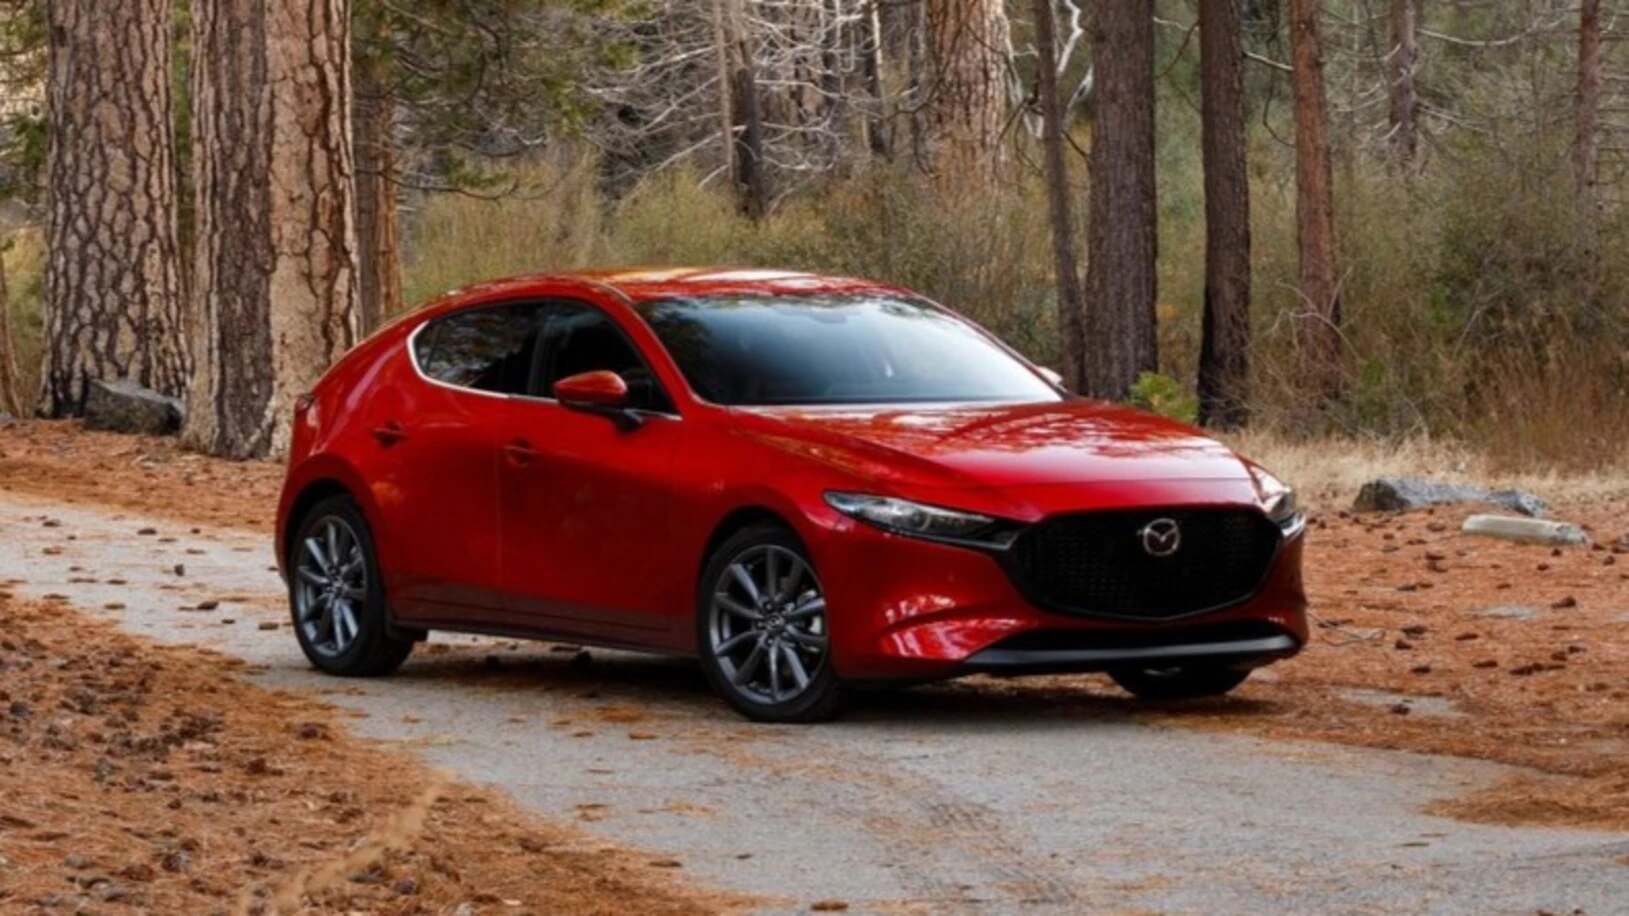 2019 Mazda 3 Hatchback Image